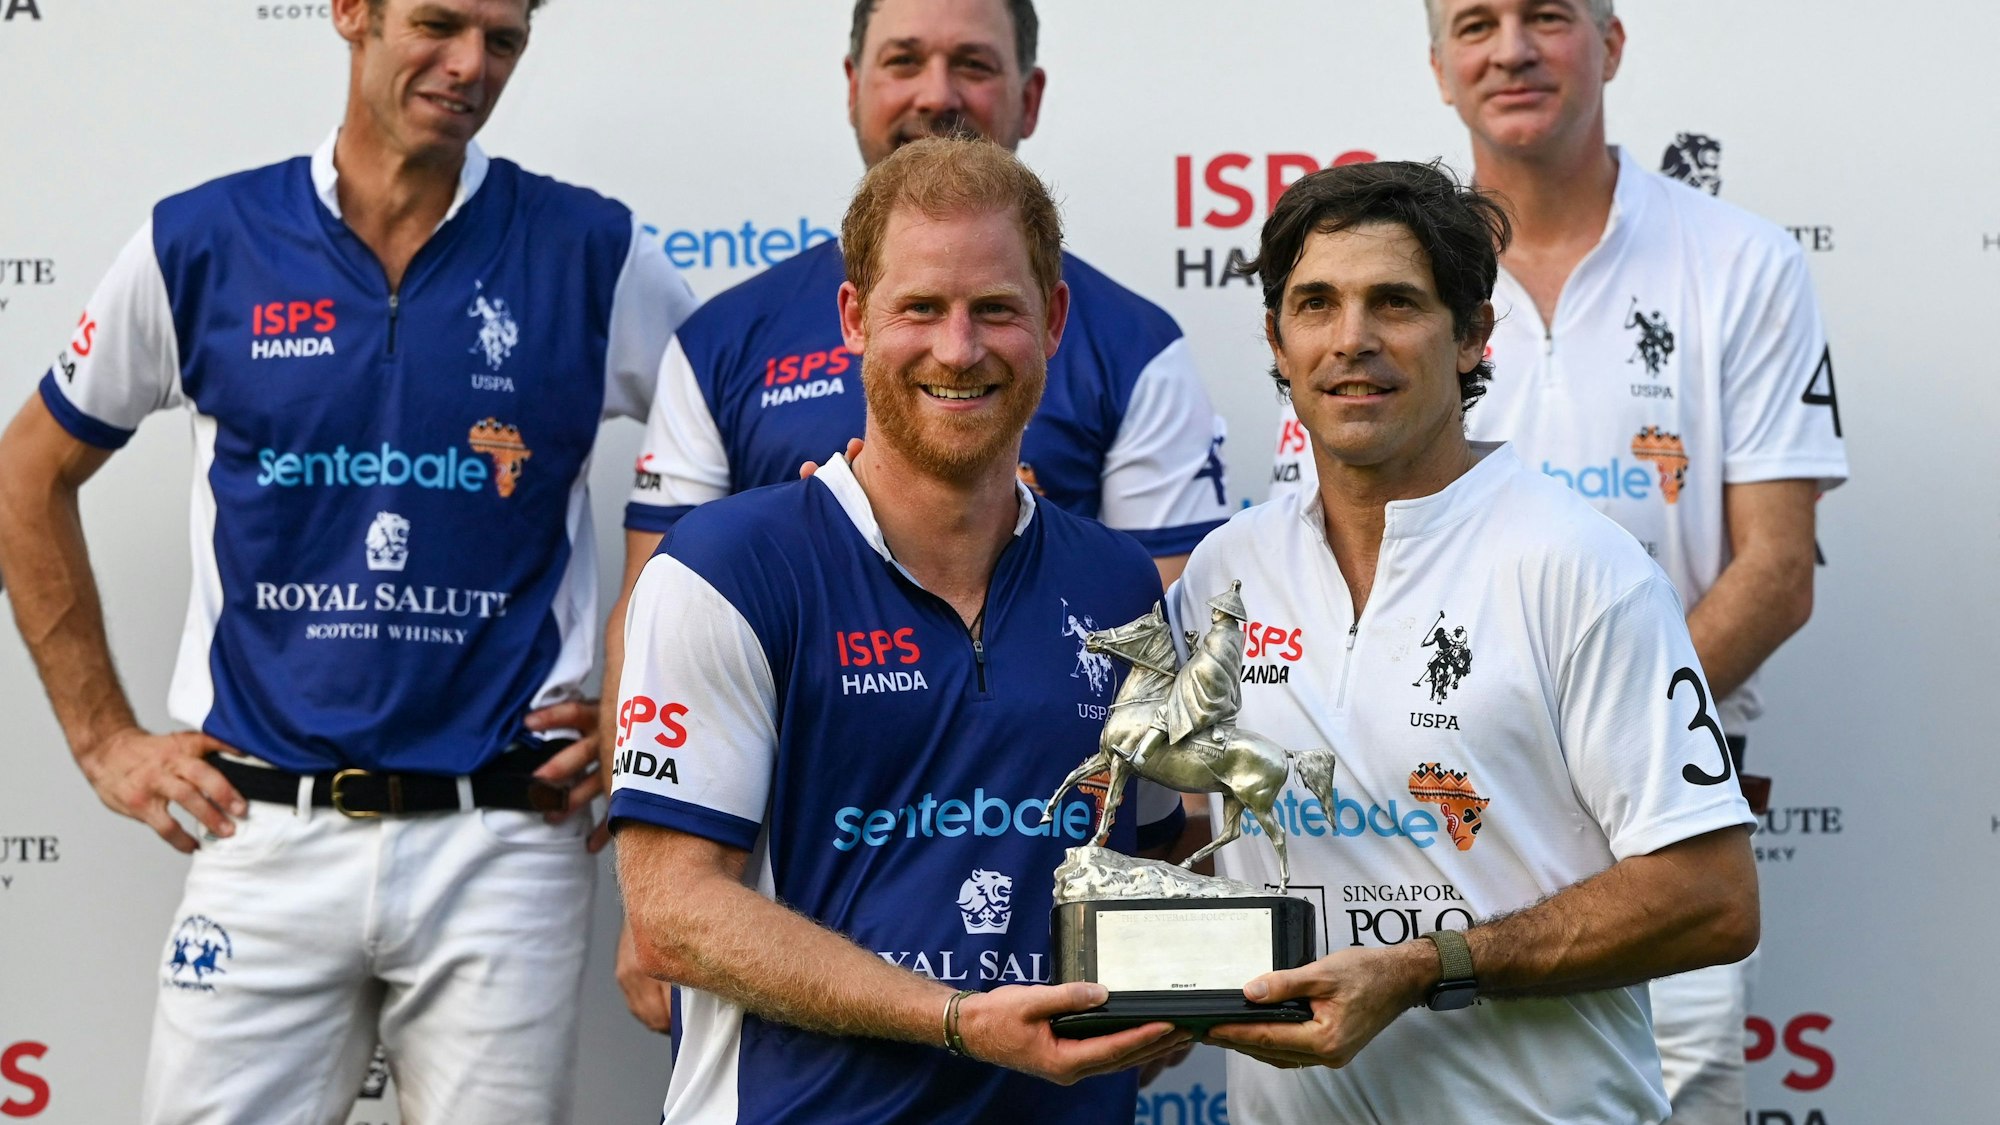 Der britische Prinz Harry und der argentinische Polospieler Nacho Figueras erhalten nach dem Sentebale ISPS Handa Polo Cup eine gemeinsame Trophäe.